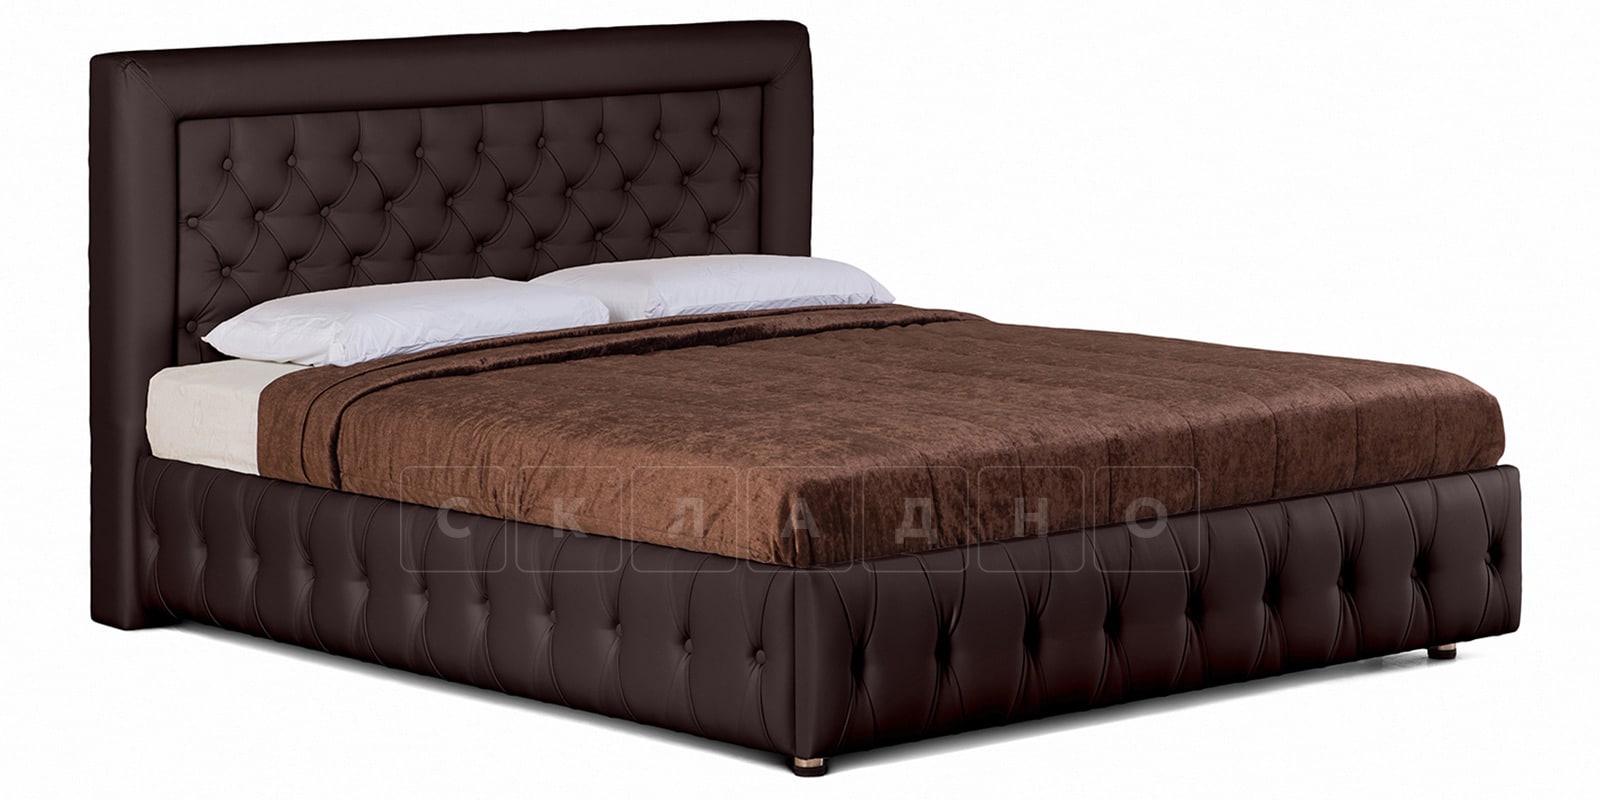 Мягкая кровать Малибу 160 см экокожа шоколадного цвета вариант 7-2 фото 1 | интернет-магазин Складно